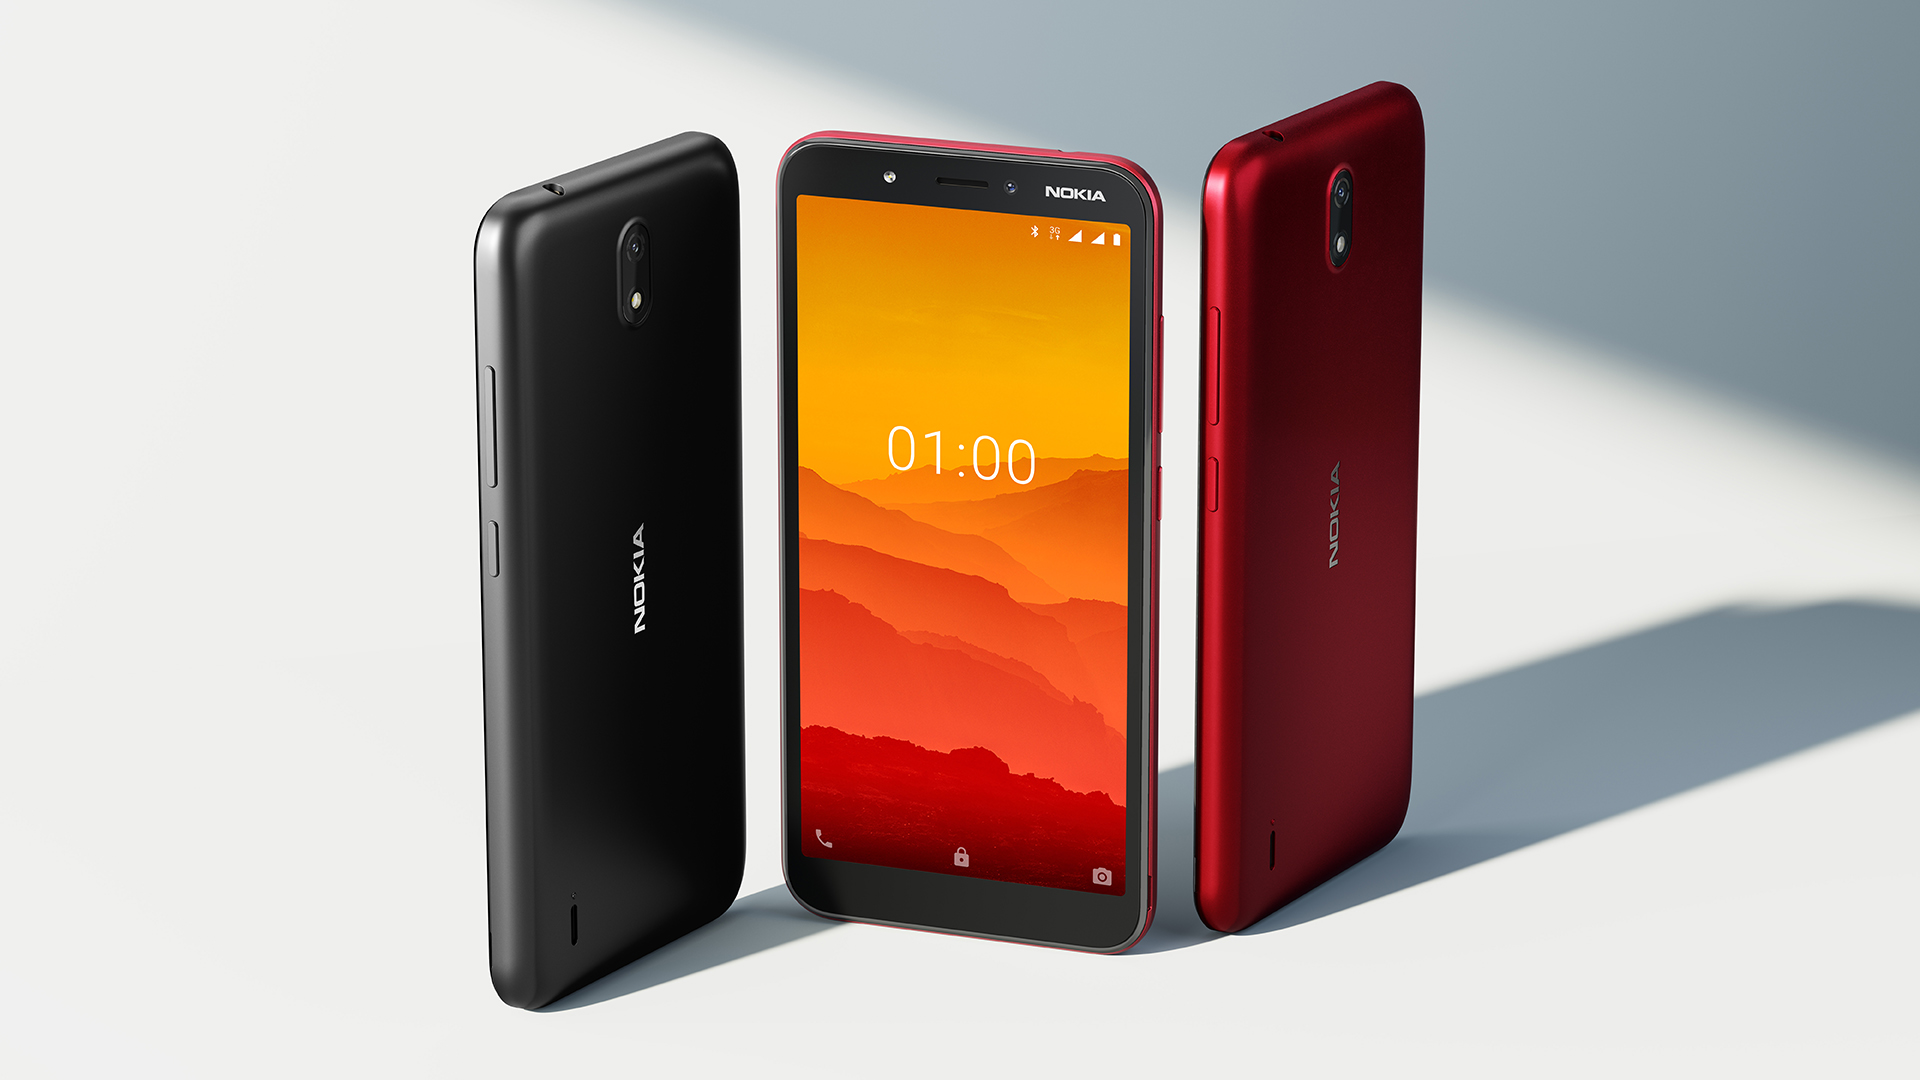 nokia c1 - budget smartphone 2020